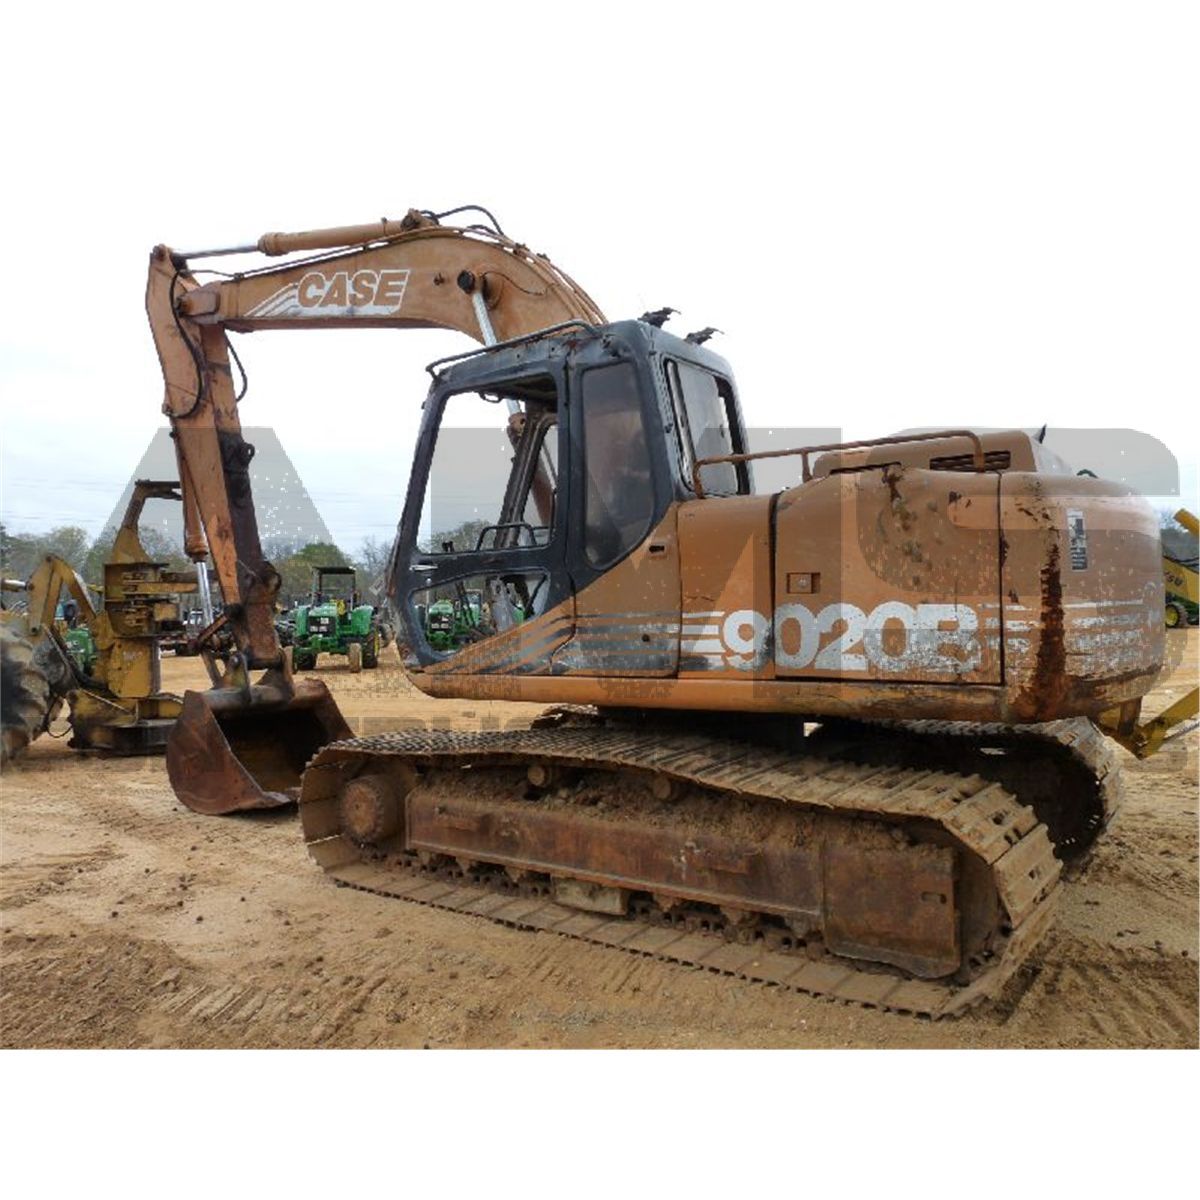 9020B Case Excavator Parts